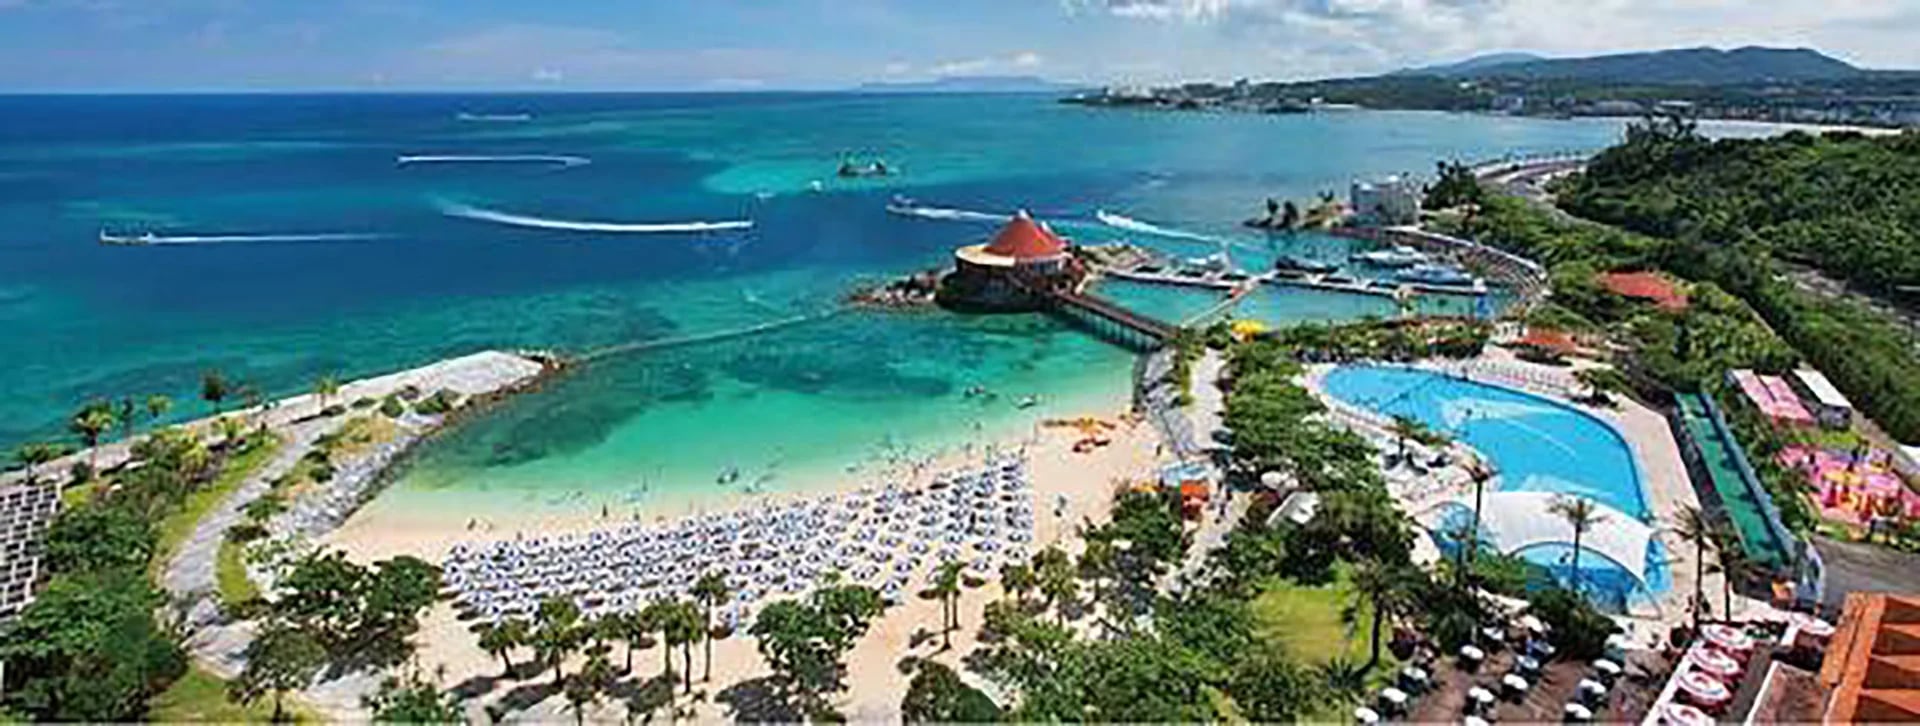 La paradisíaca playa de Okinawa, donde Marcos fue invitado de casualidad